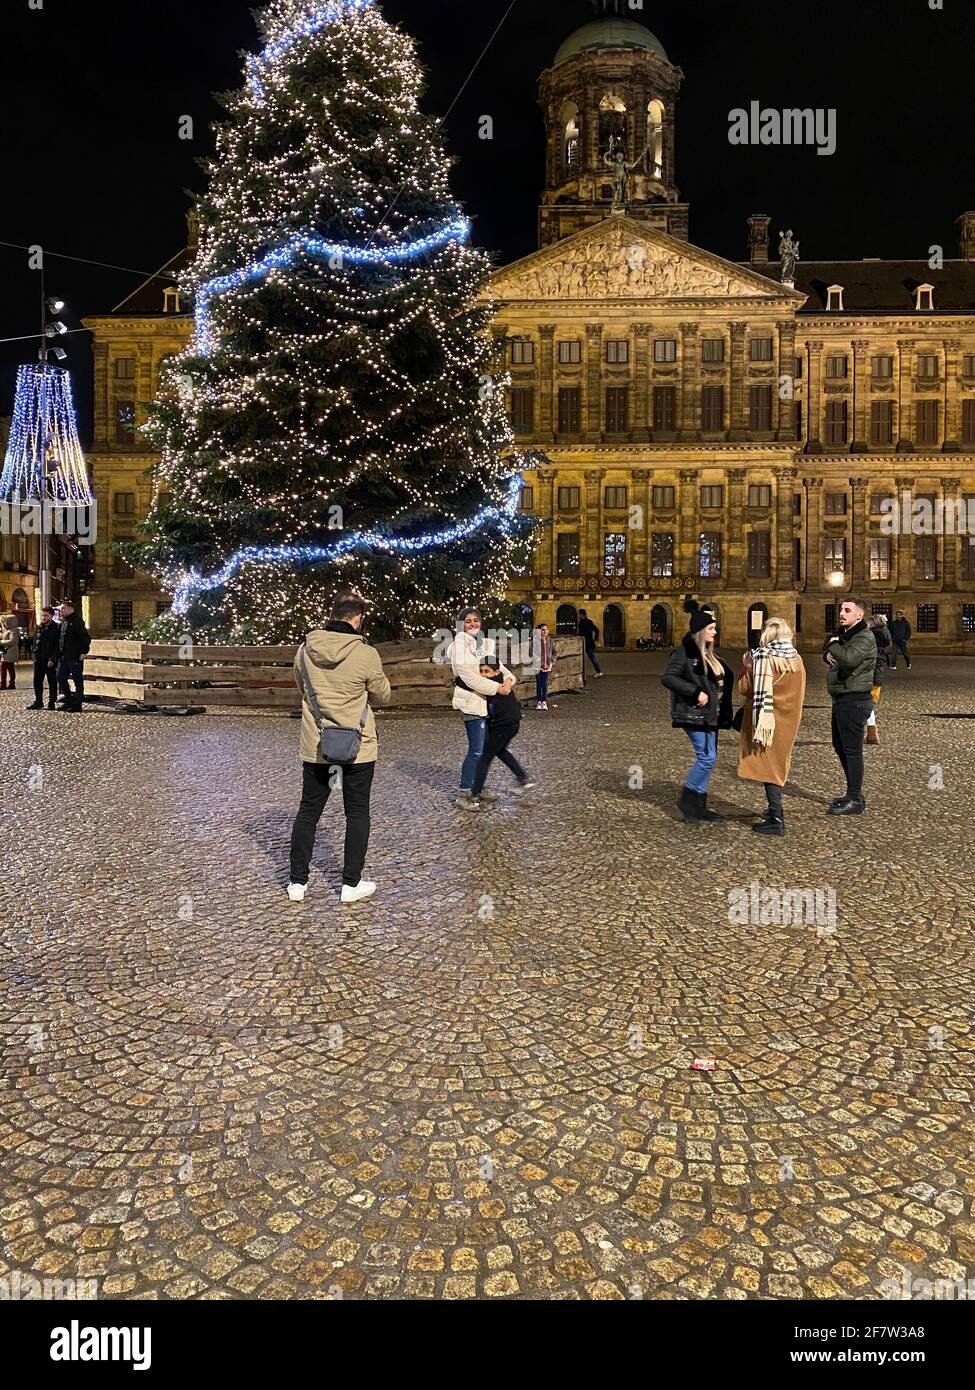 Albero di Natale decorato nel centro della città in Piazza Dam Ad Amsterdam  Foto stock - Alamy